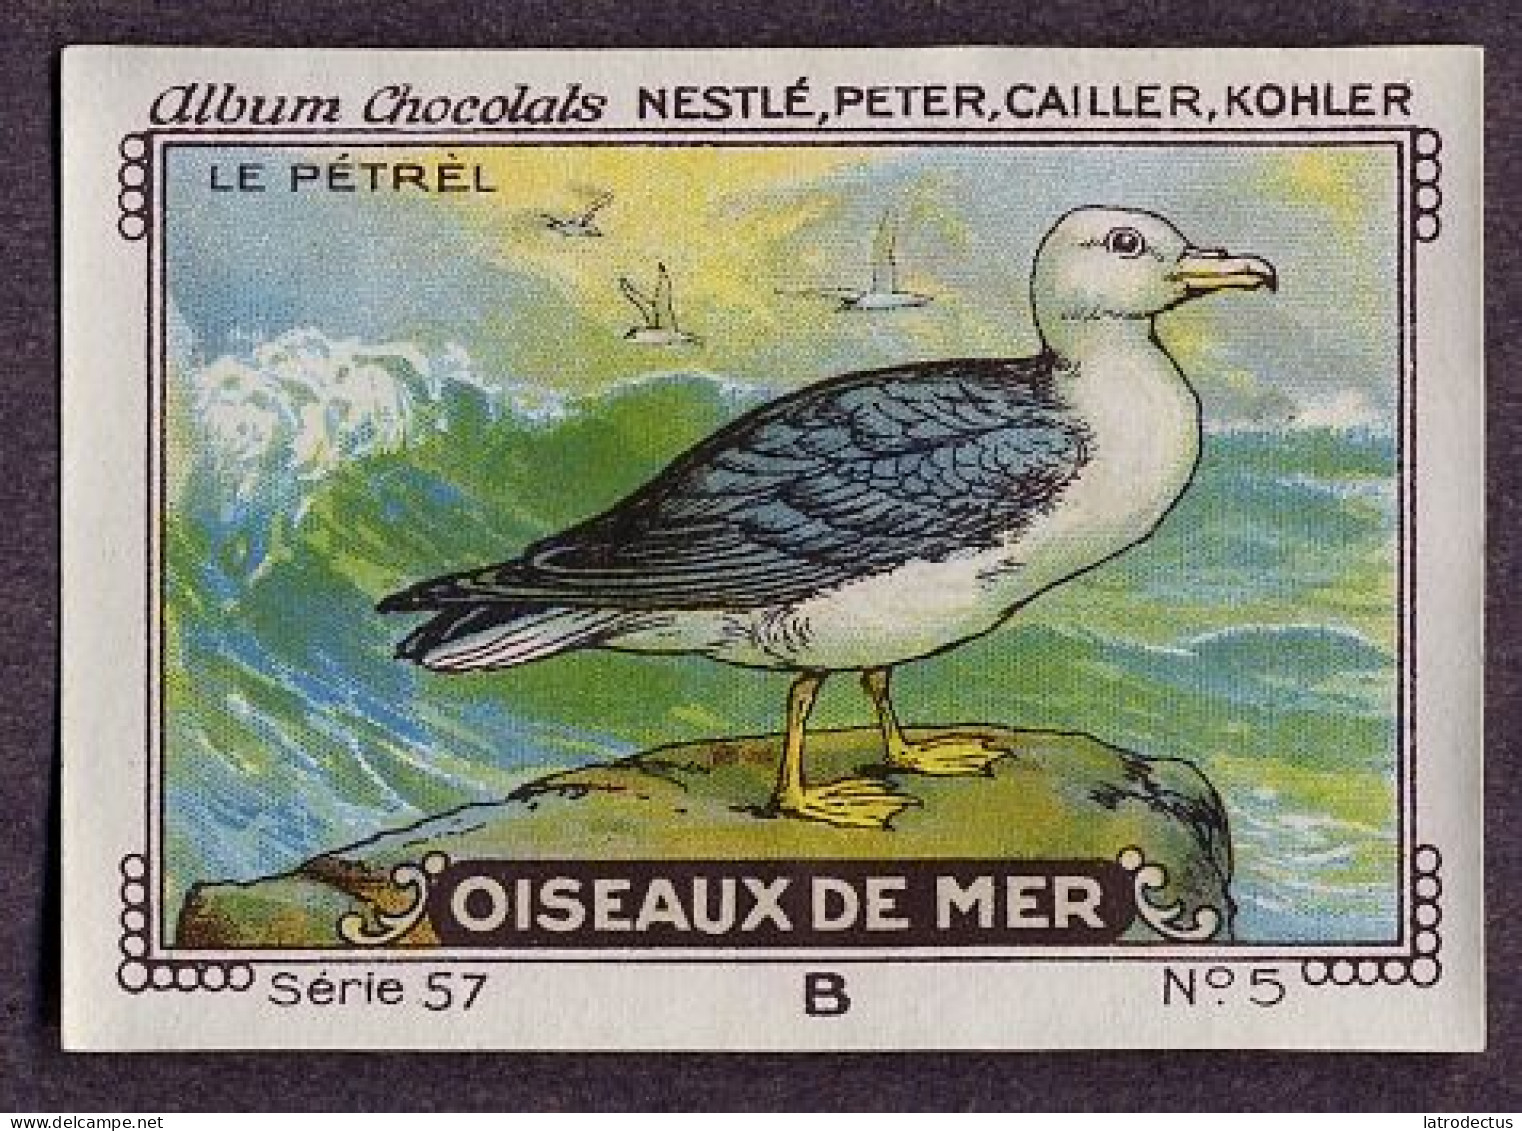 Nestlé - 57B - Oiseaux De Mer, Seabirds - 5 - Le Pétrel - Nestlé